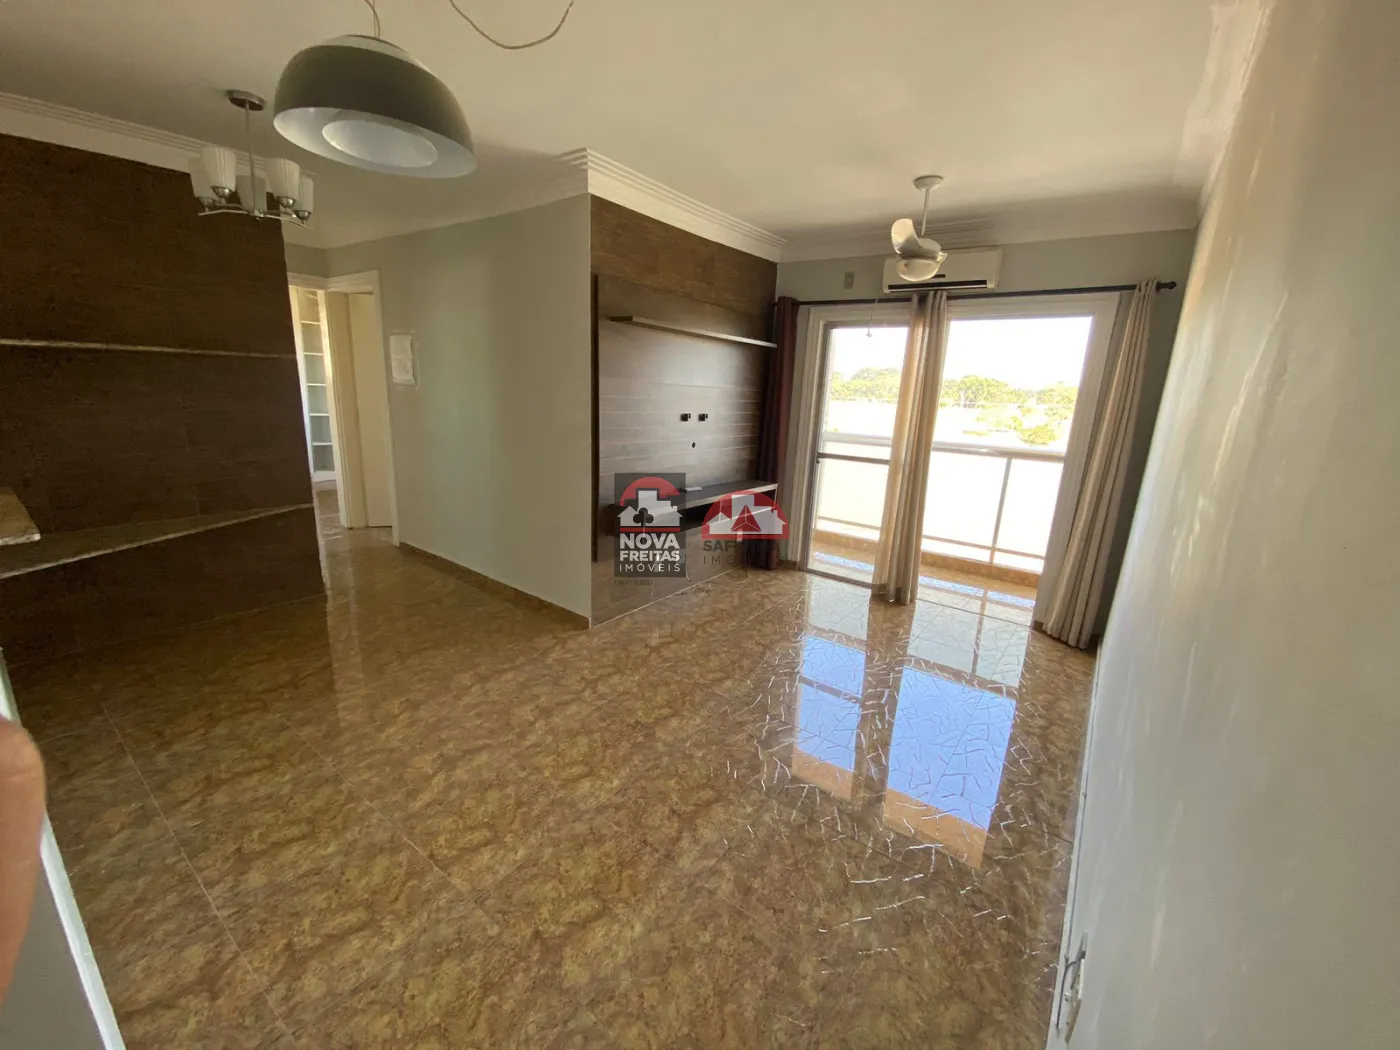 Apartamento / Padrão em São José dos Campos Alugar por R$1.700,00